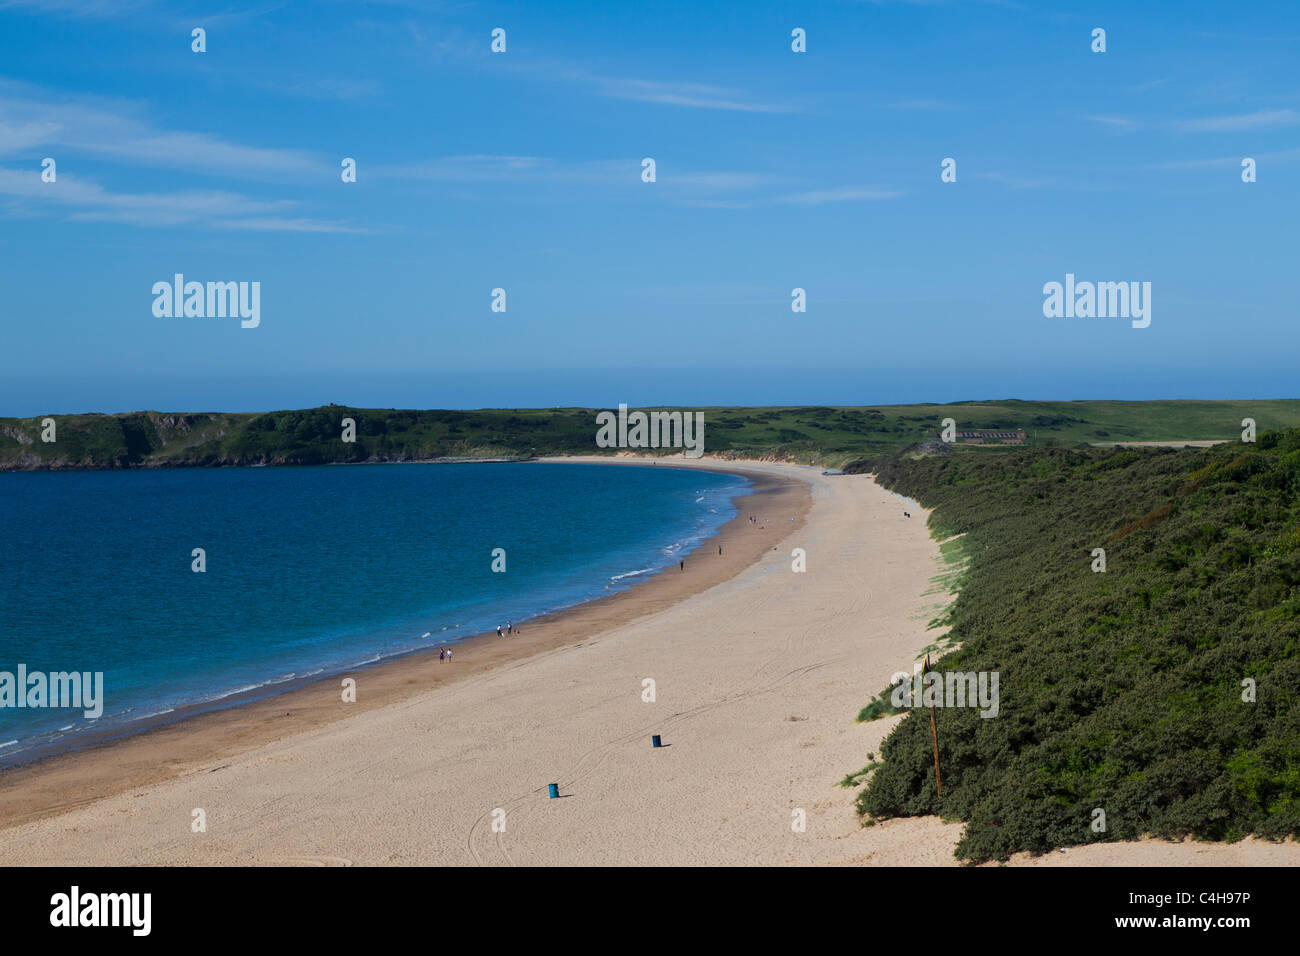 La plage de sable de Tenby, Pembrokeshire, Pays de Galles, Royaume-Uni. Banque D'Images